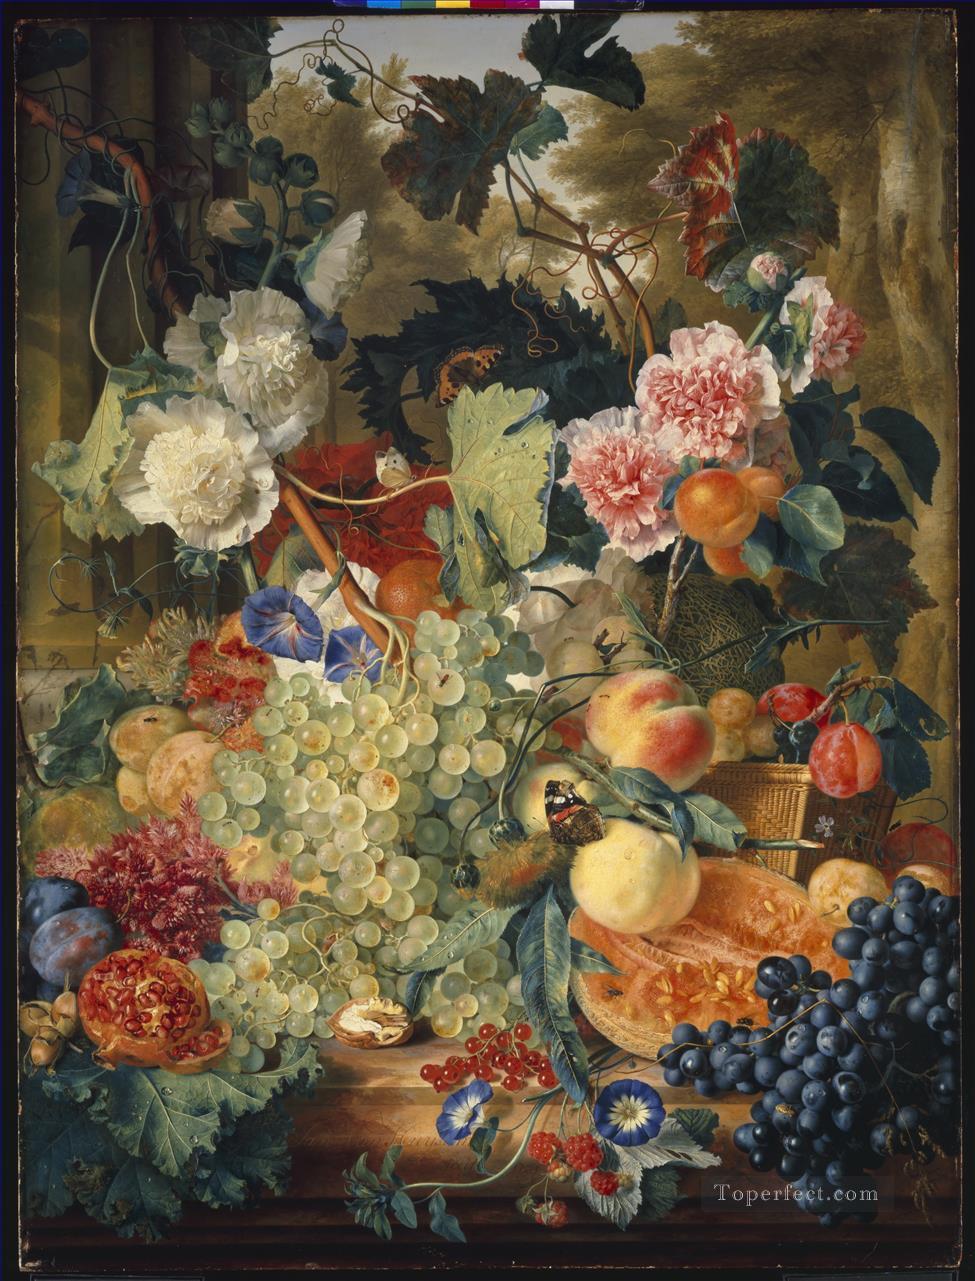 大理石の板の上に描かれた花と果物の古典的な静物画_1 ヤン・ファン・ホイスム油絵